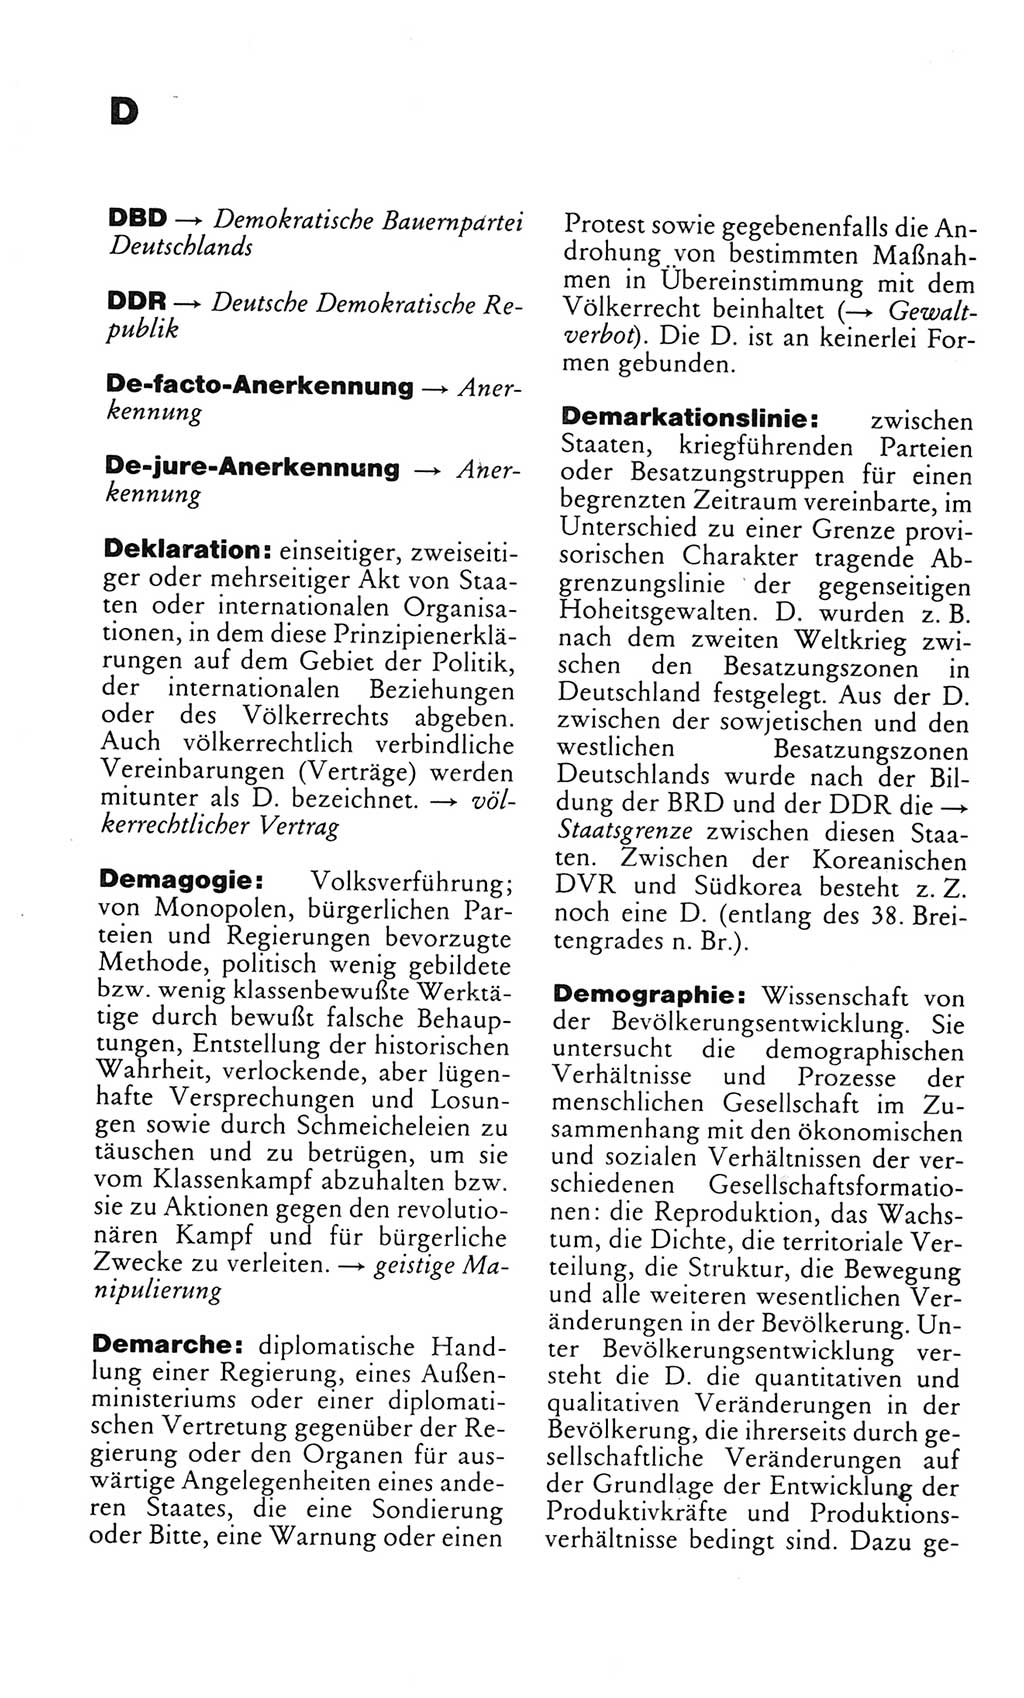 Kleines politisches Wörterbuch [Deutsche Demokratische Republik (DDR)] 1985, Seite 164 (Kl. pol. Wb. DDR 1985, S. 164)